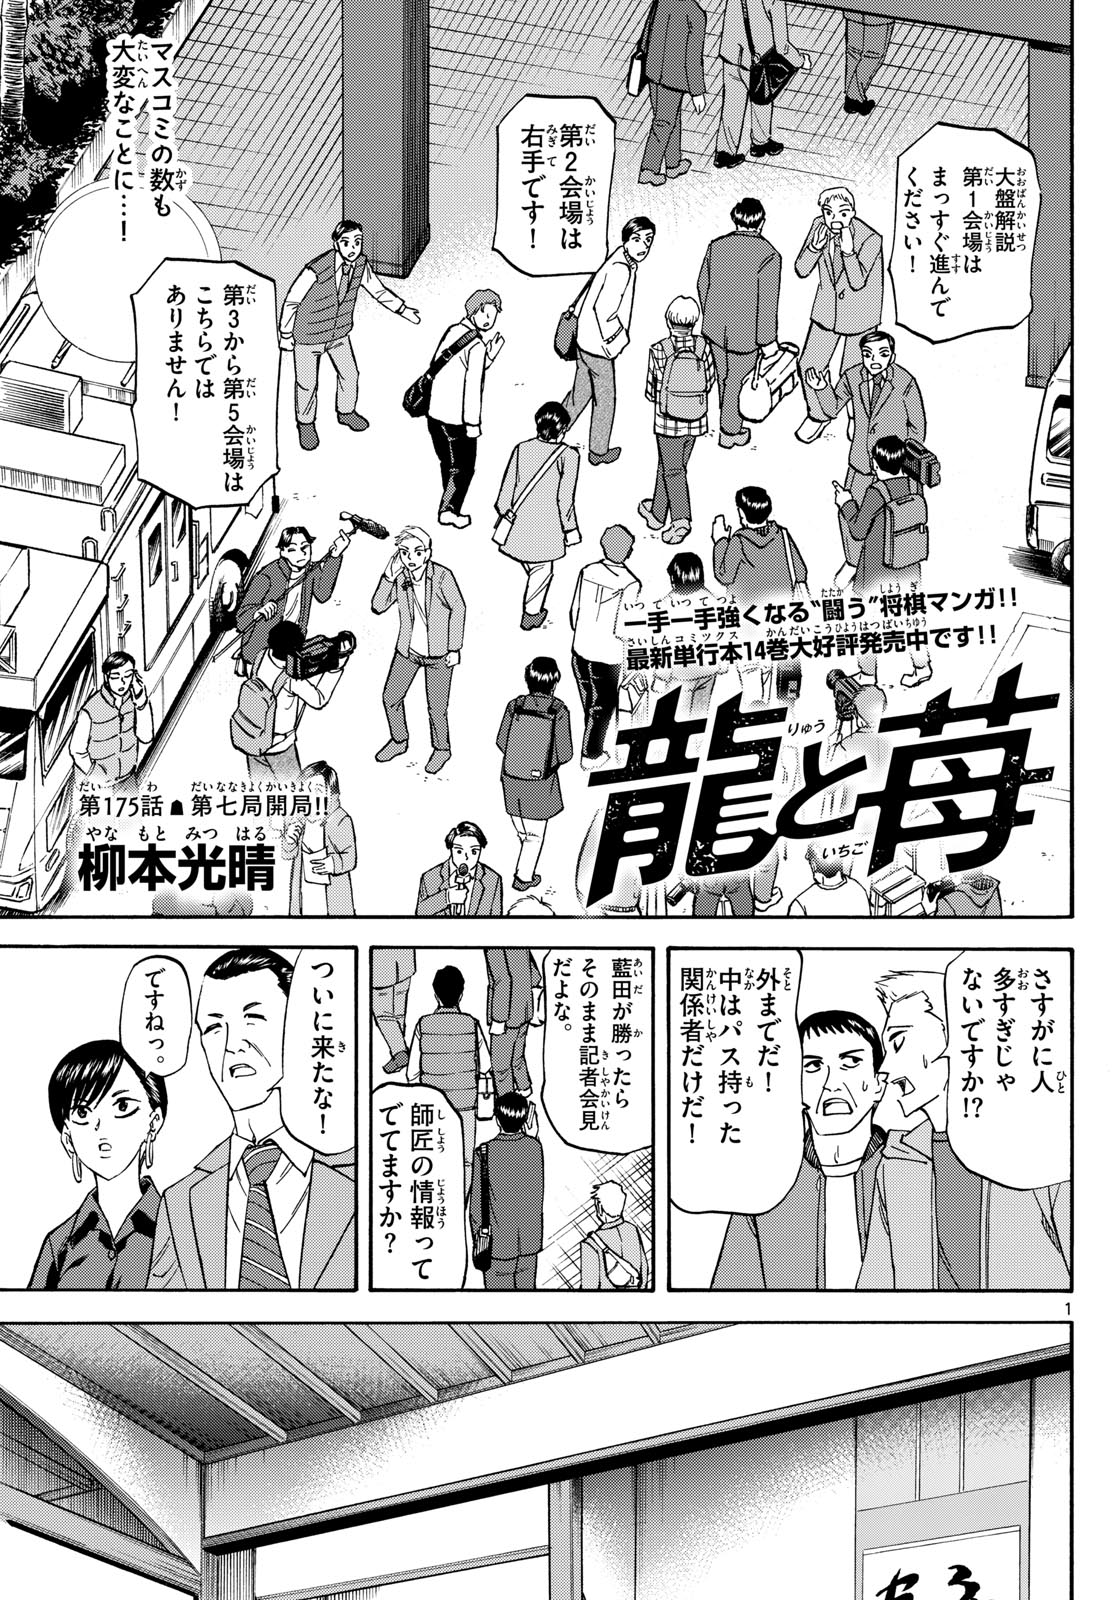 Tatsu to Ichigo - Chapter 175 - Page 1